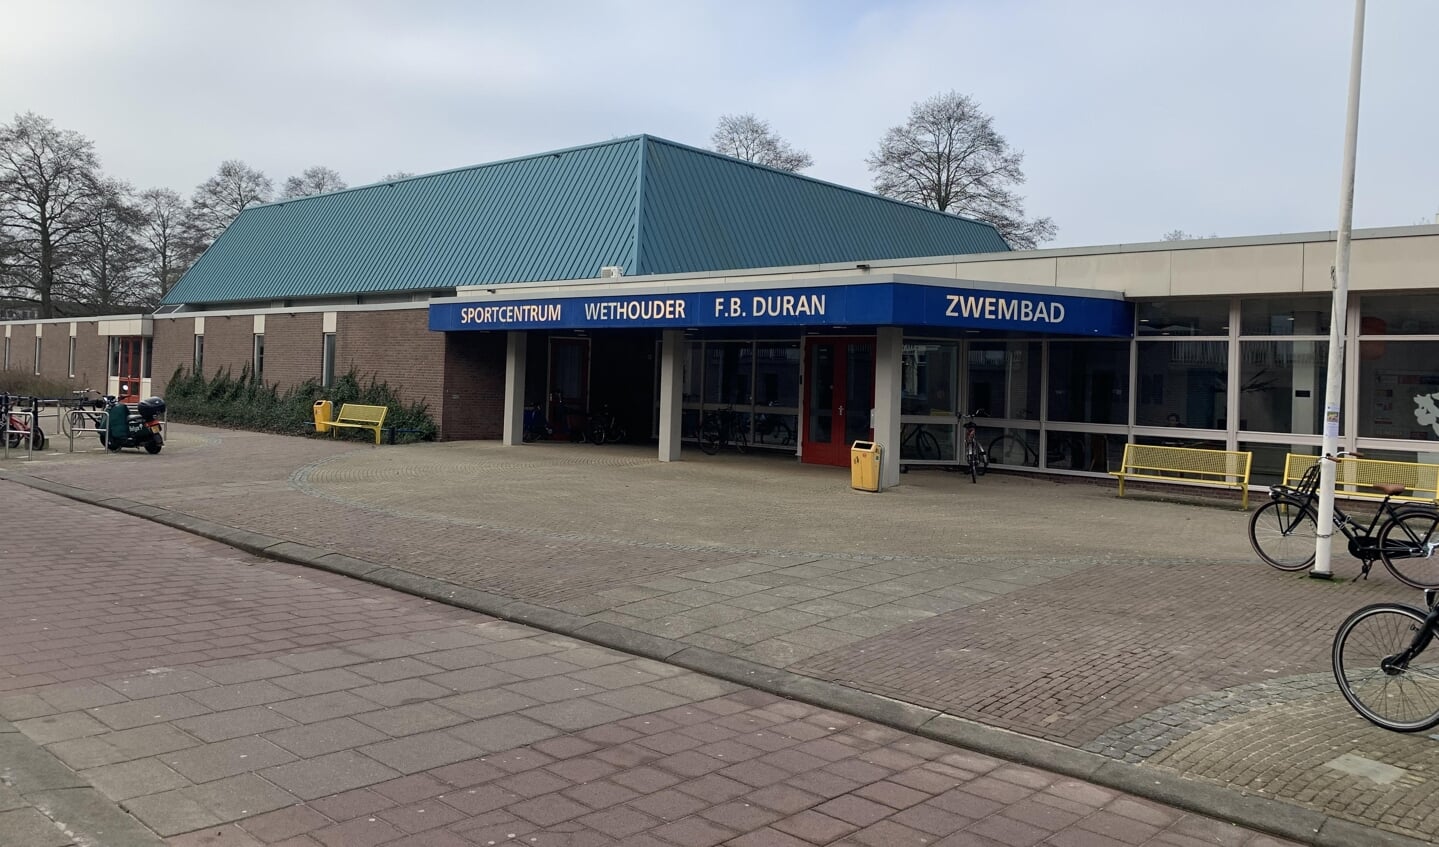 Sportcentrum Wethouder F.B. Duran.